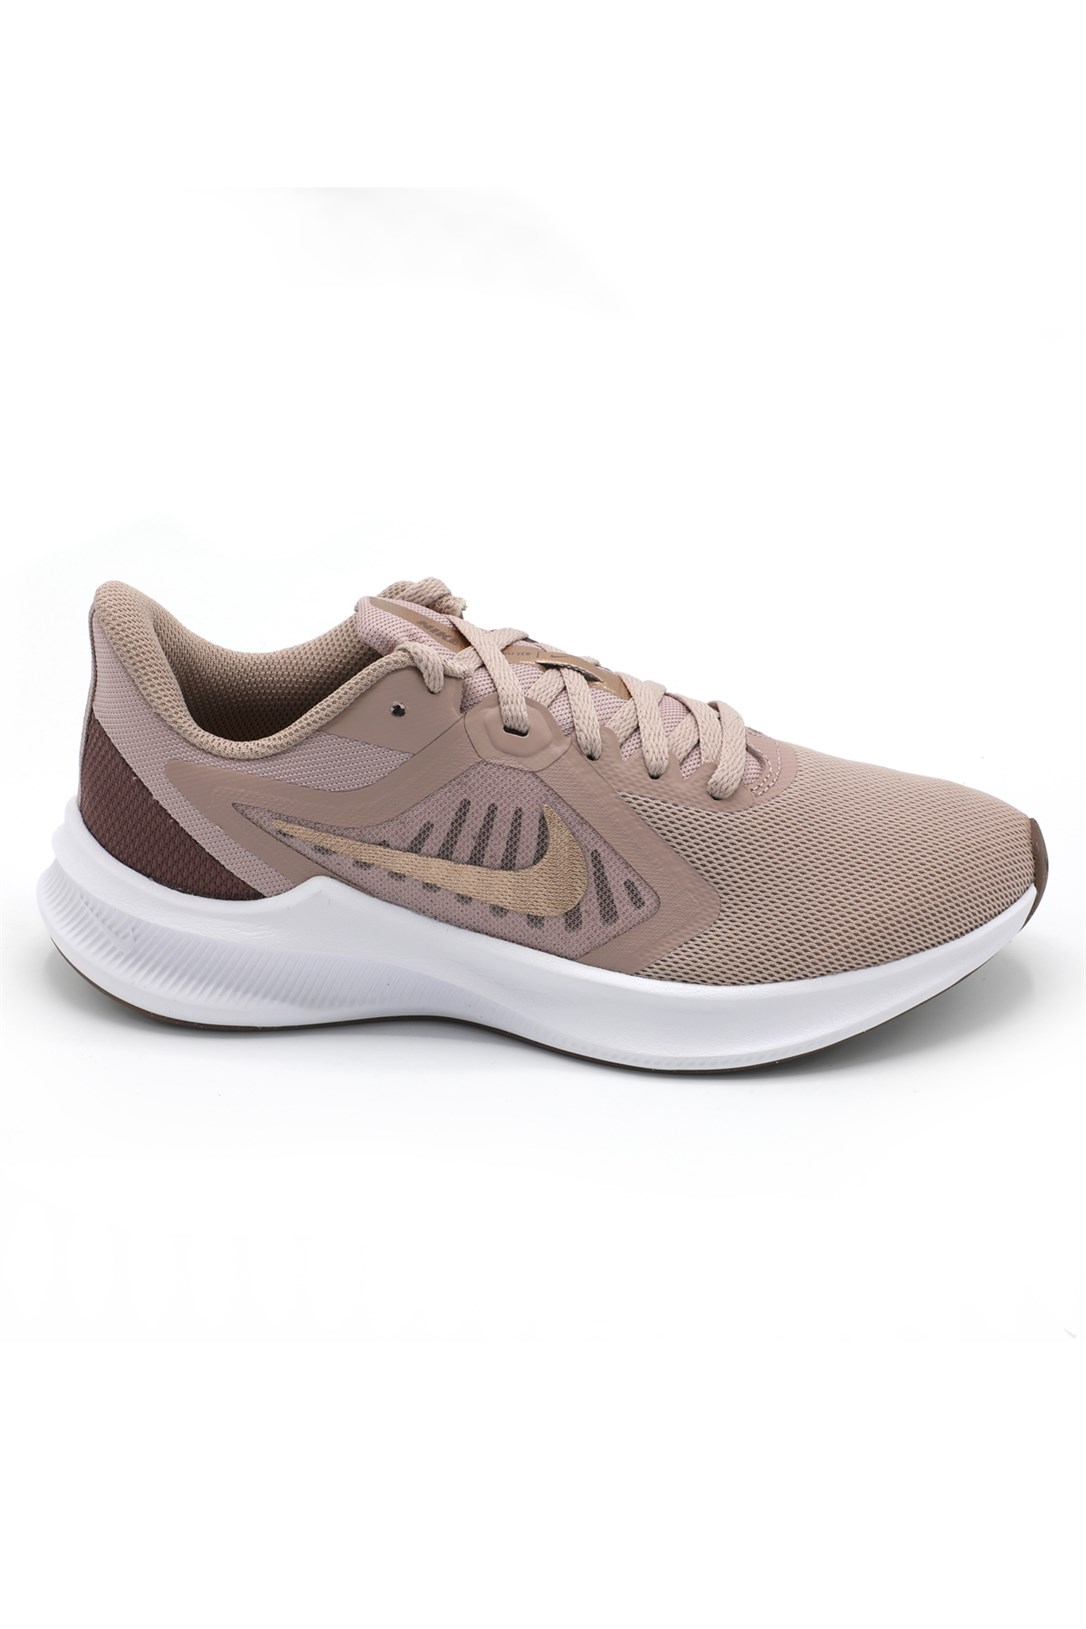 Nike Günlük Koşu Yürüyüş Bronz Kadın Spor Ayakkabı CI9984-200